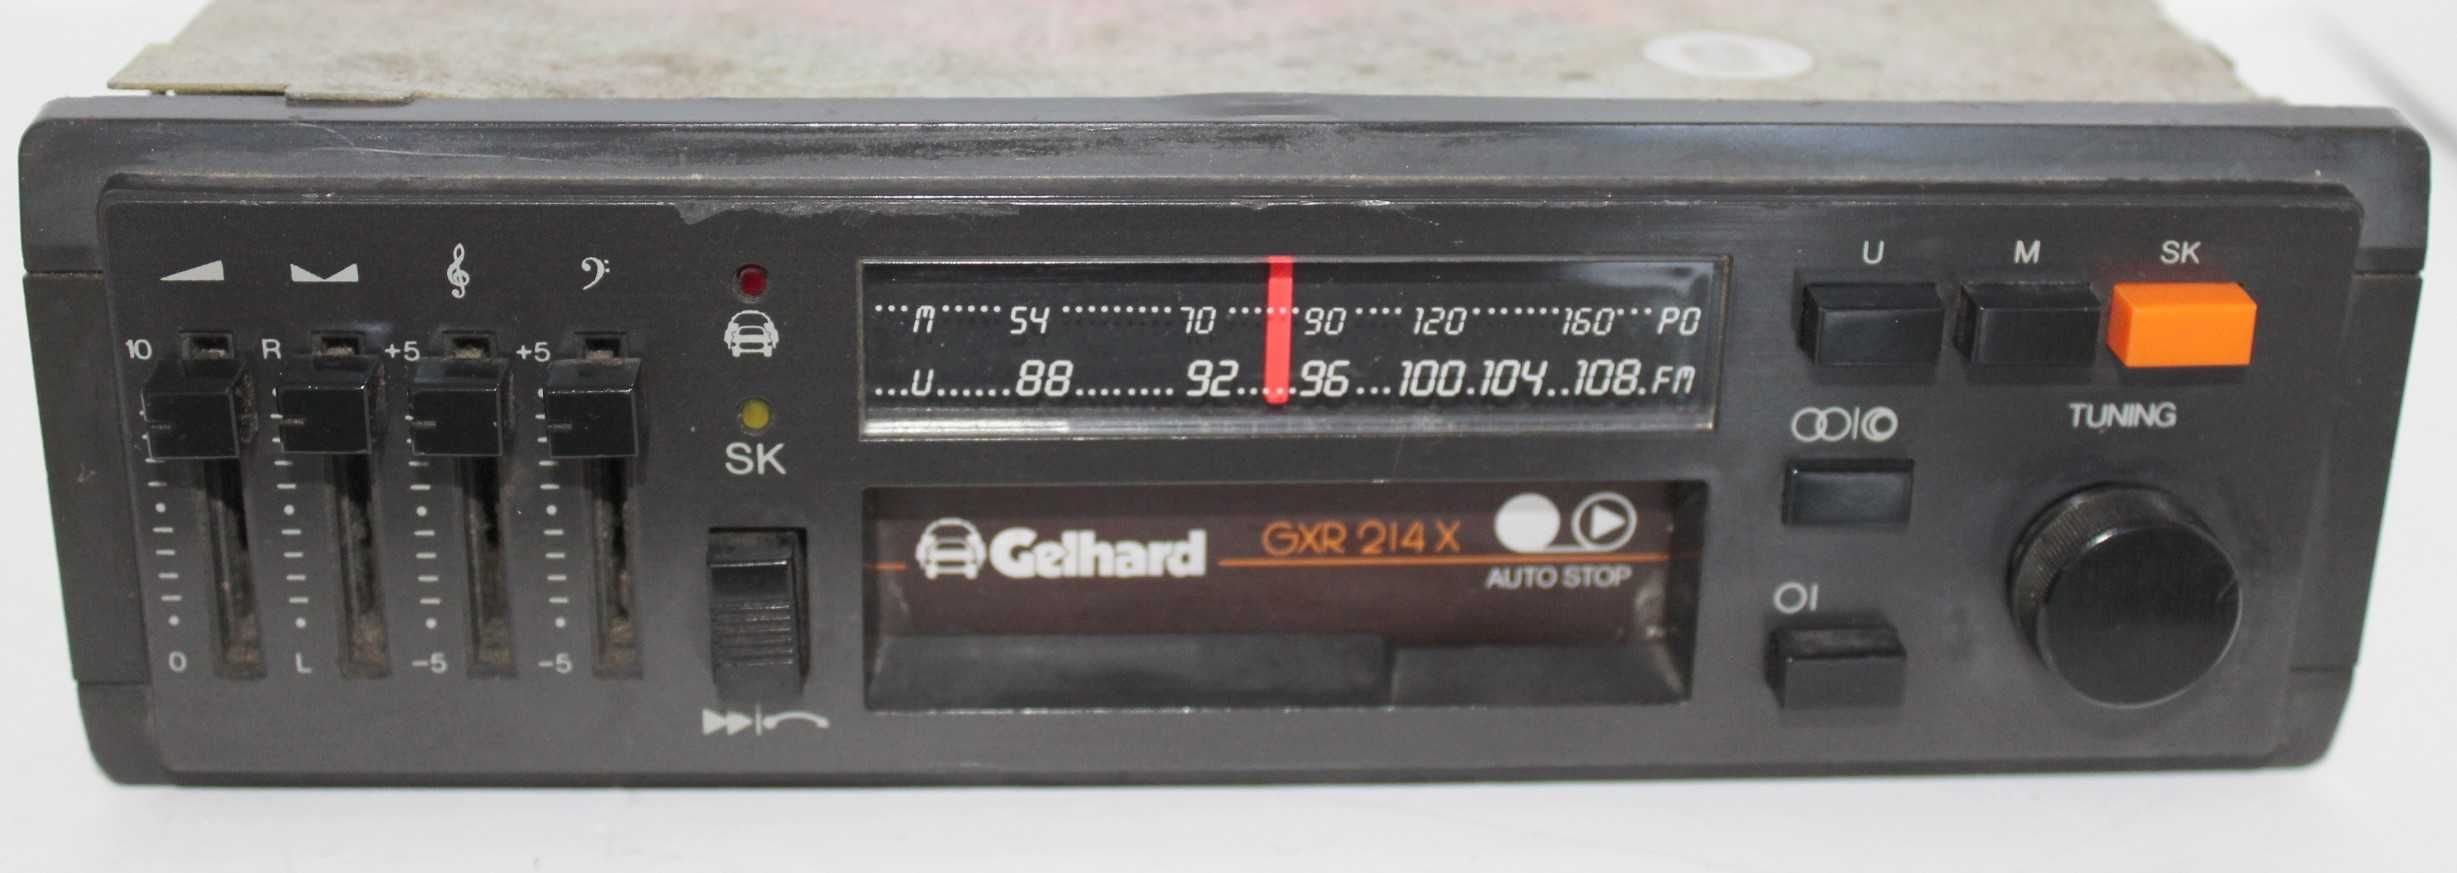 RADIO GELHARD GXR214X  - klasyczne na suwaczkach  sprawne-- renault 5